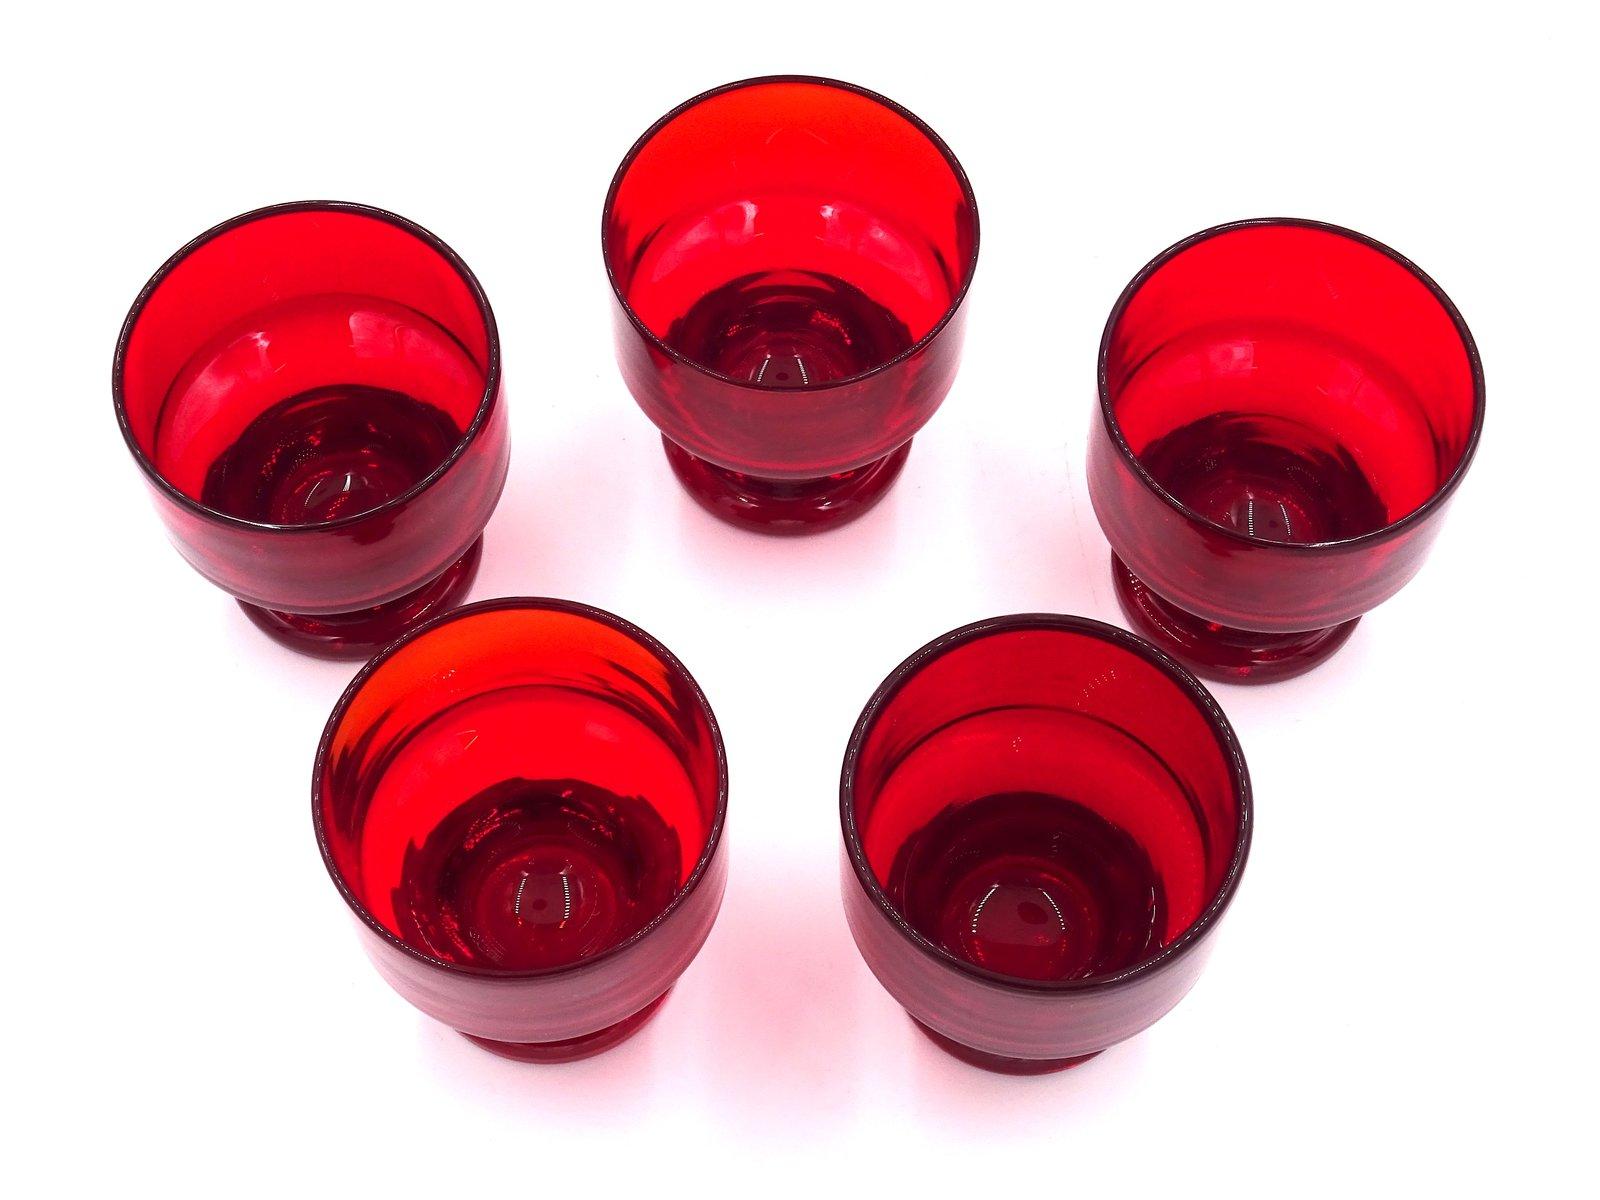 Set bestehend aus fünf Gläsern / Schalen aus Muranoglas aus den 1930er Jahren.

Elegant und charakteristisch sind die besonderen Farben des Glases in Rot- und Orangetönen, wobei jedes einzelne Stück durch die Intensität der Farbe und die